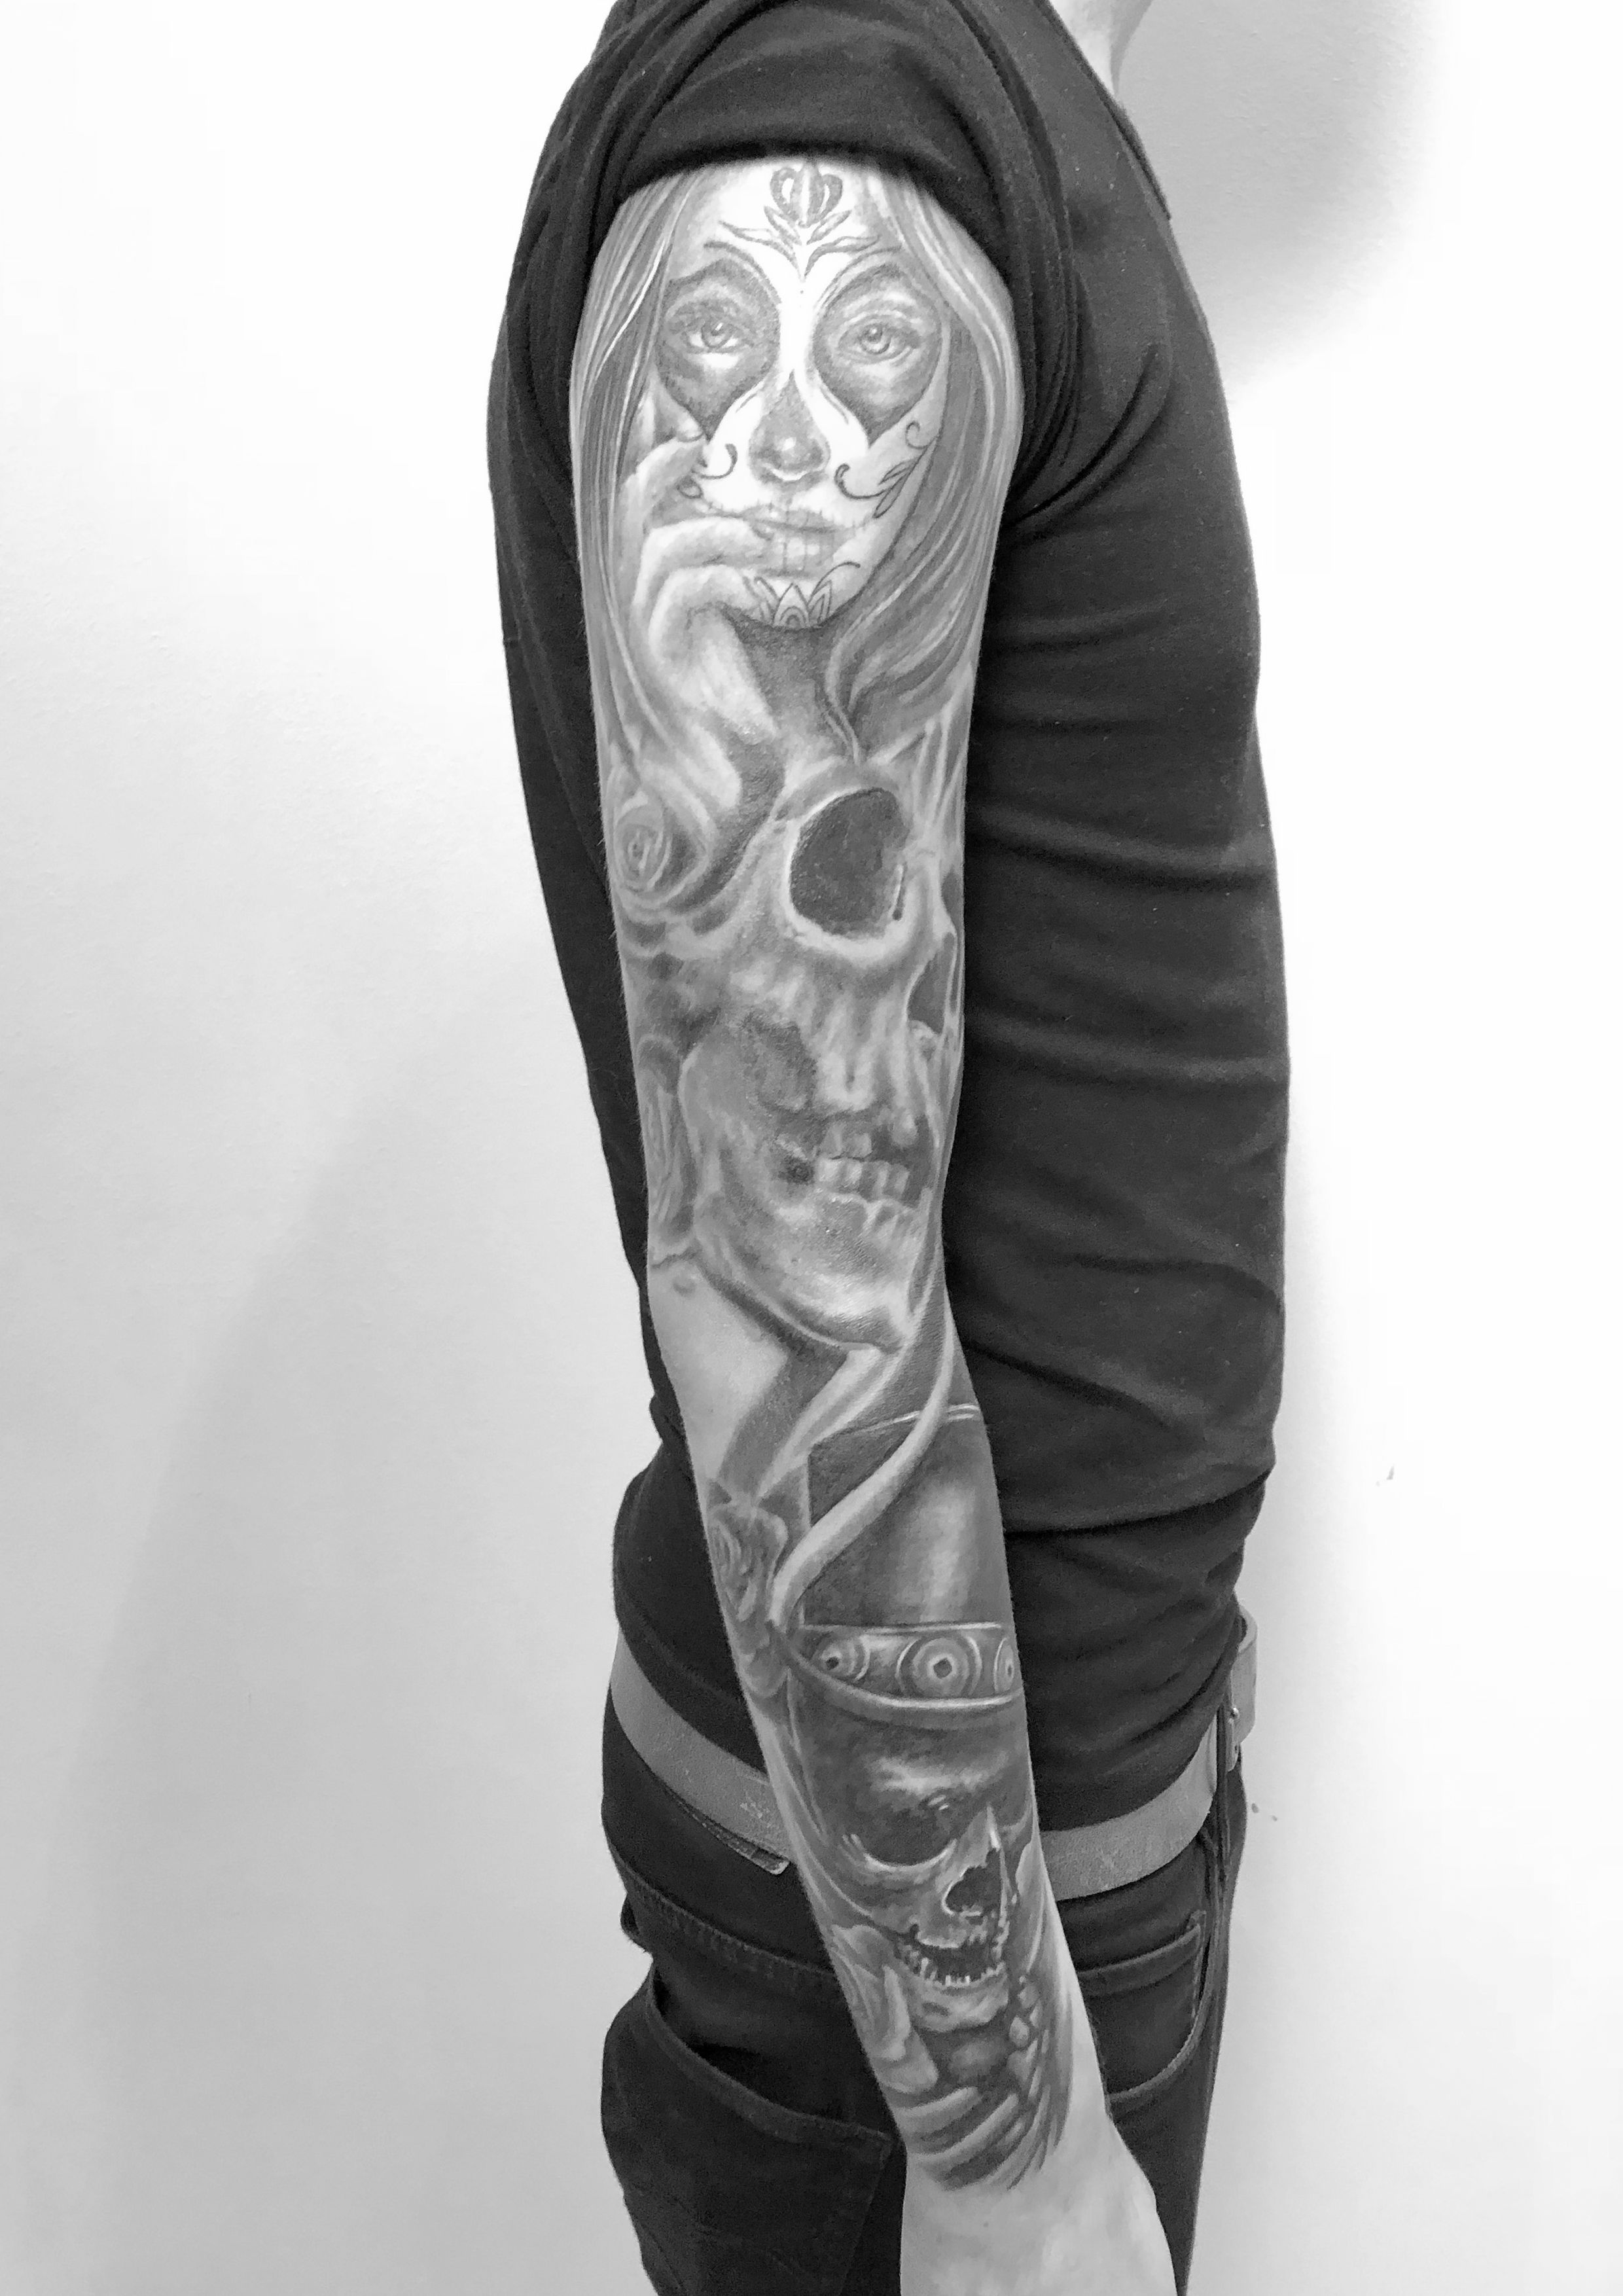 tattoo studio anansi münchen munich laszlo artist tätowierer best bester radio gong sleeve black schwarz skull dark